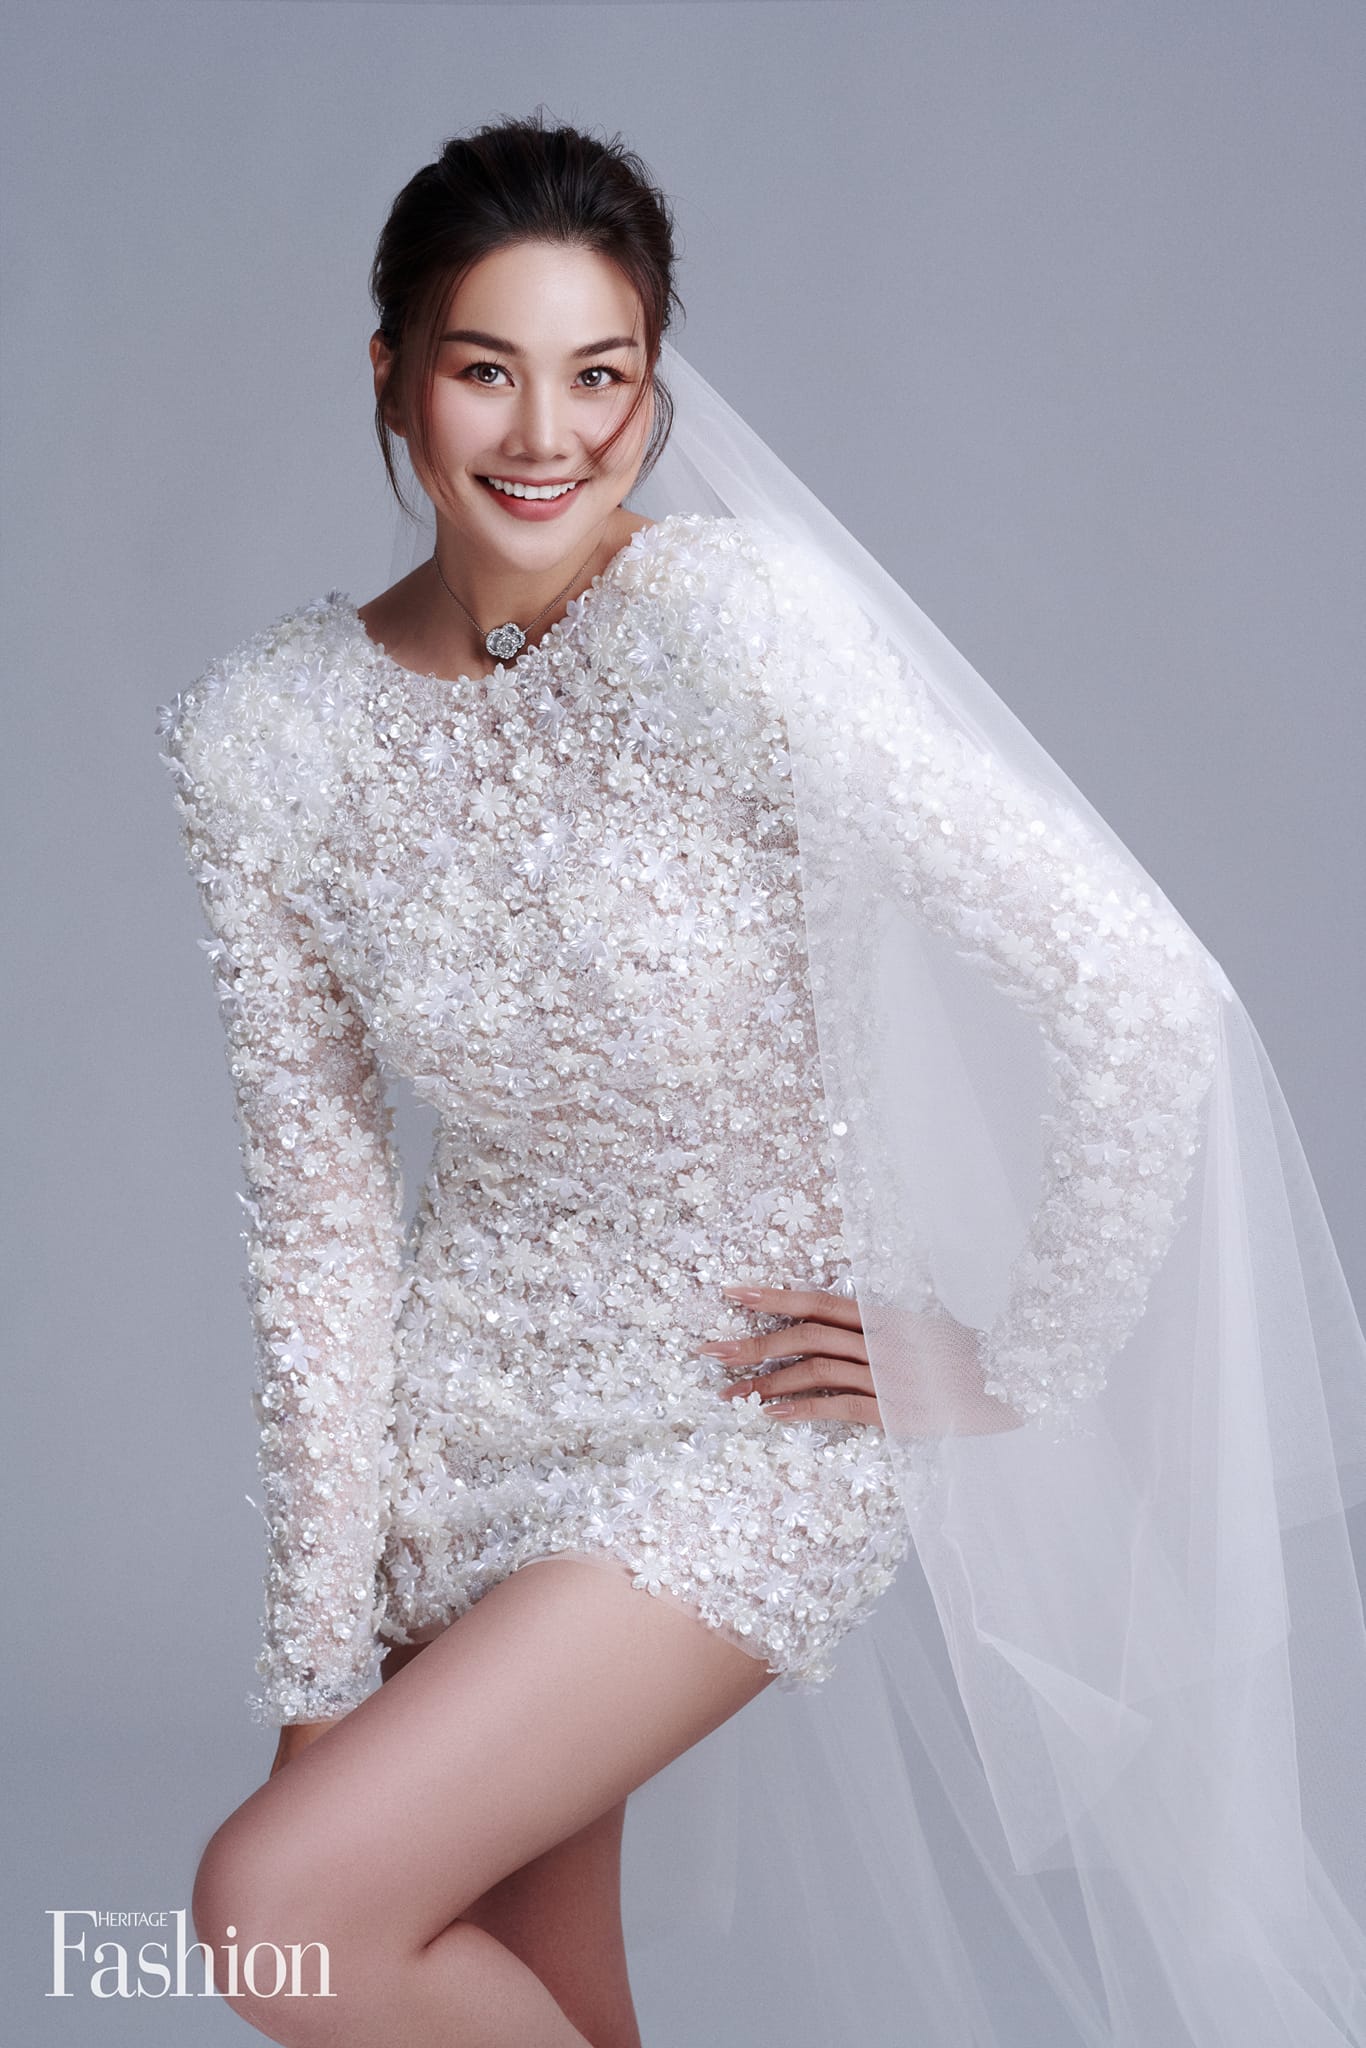 Những lần Thanh Hằng mặc váy cưới đẹp lộng lẫy, càng ngắm càng mong ngày chị đẹp thành cô dâu xịn - Ảnh 3.